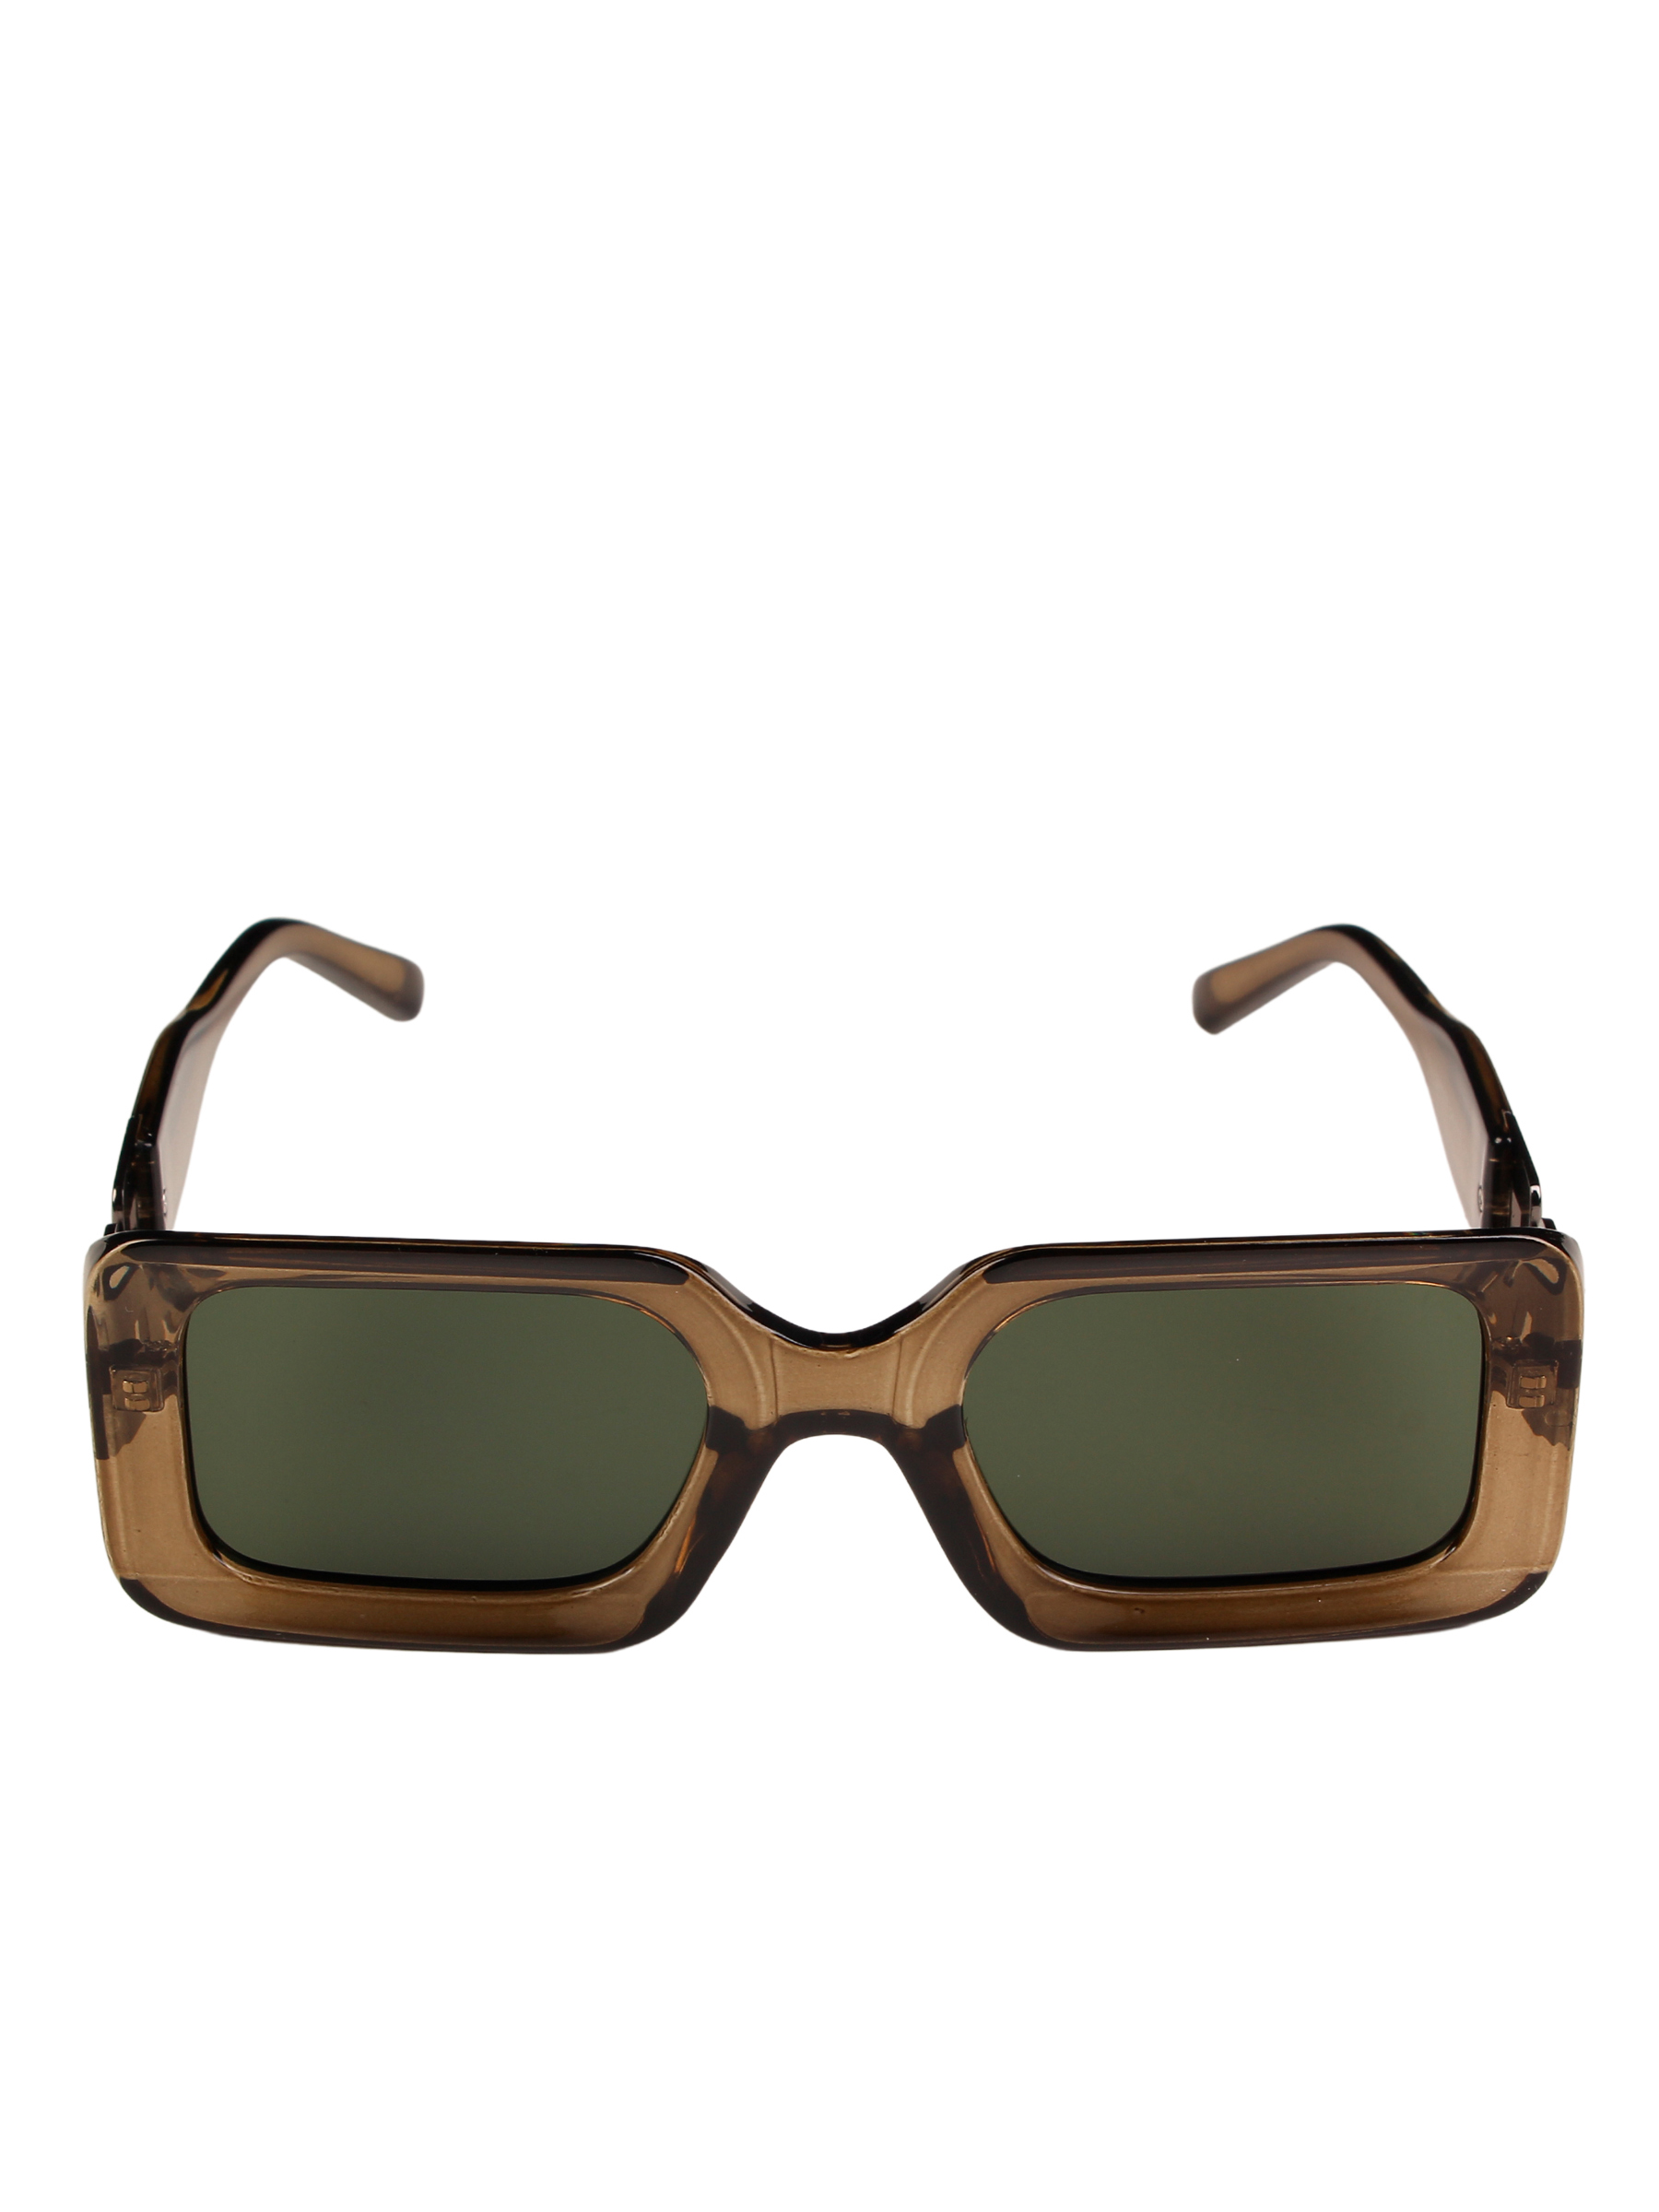 фото Солнцезащитные очки женские pretty mania dd044 зеленые/коричневые